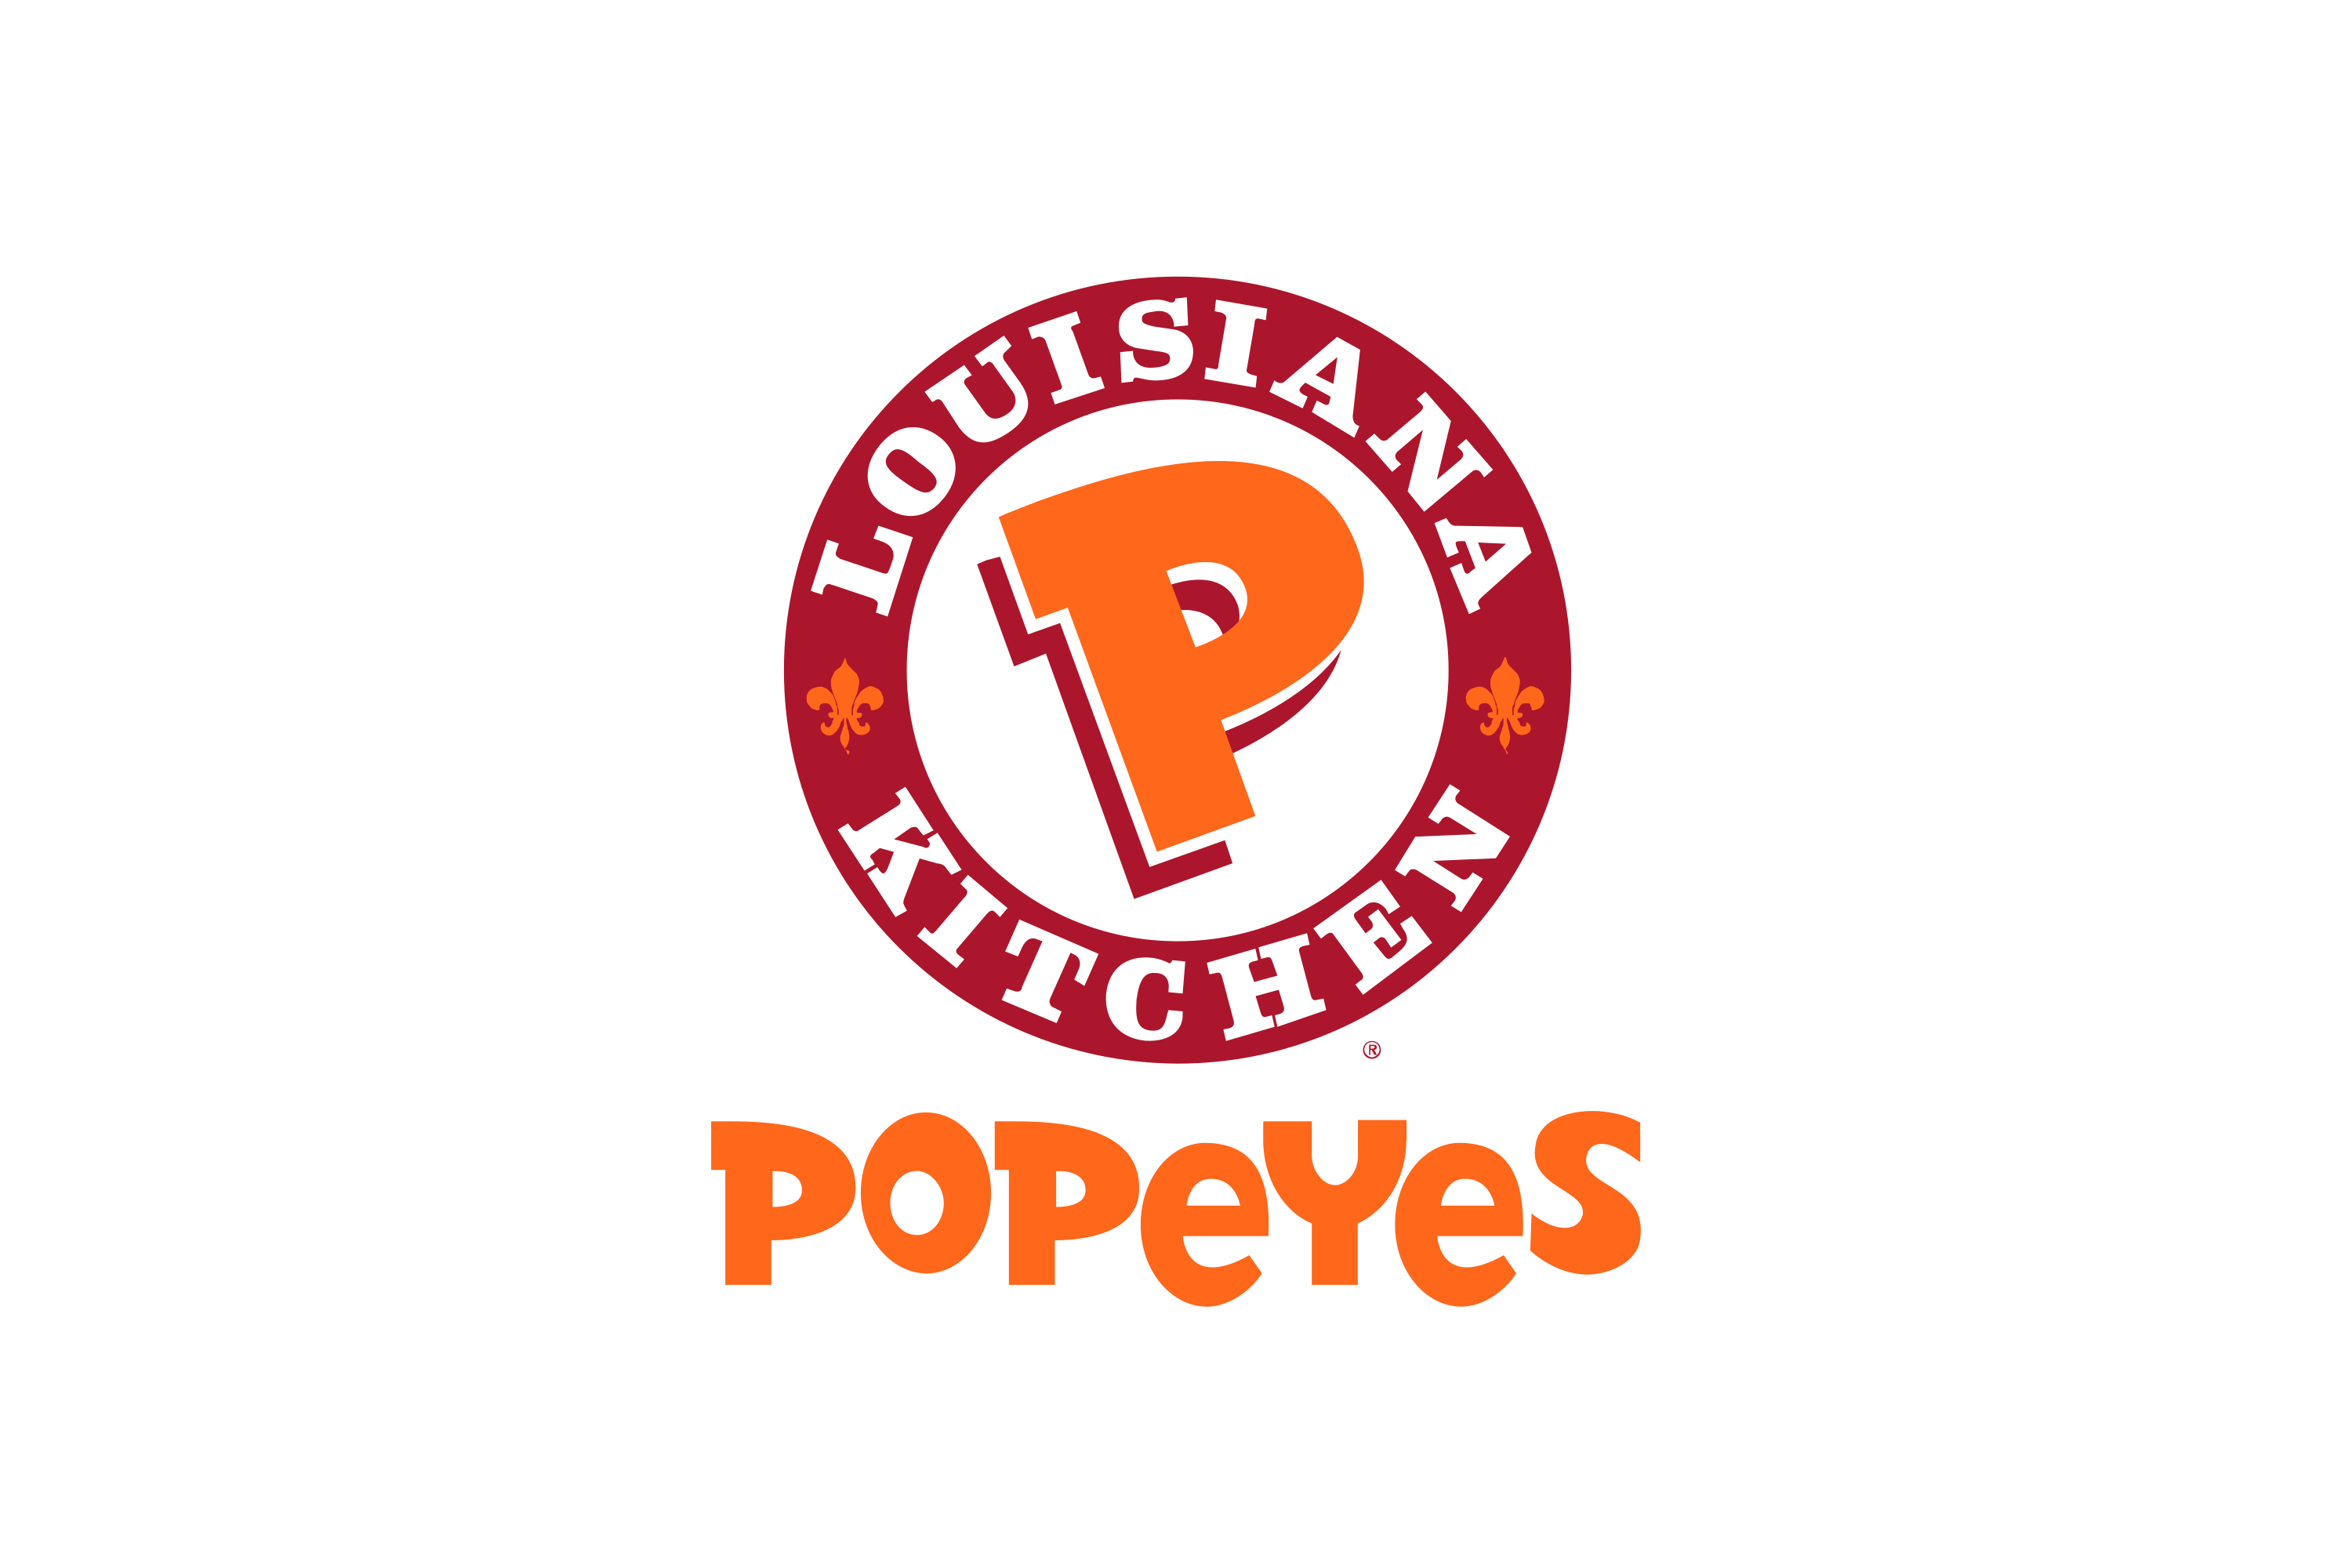 Popeye's 'Louisiana fast'